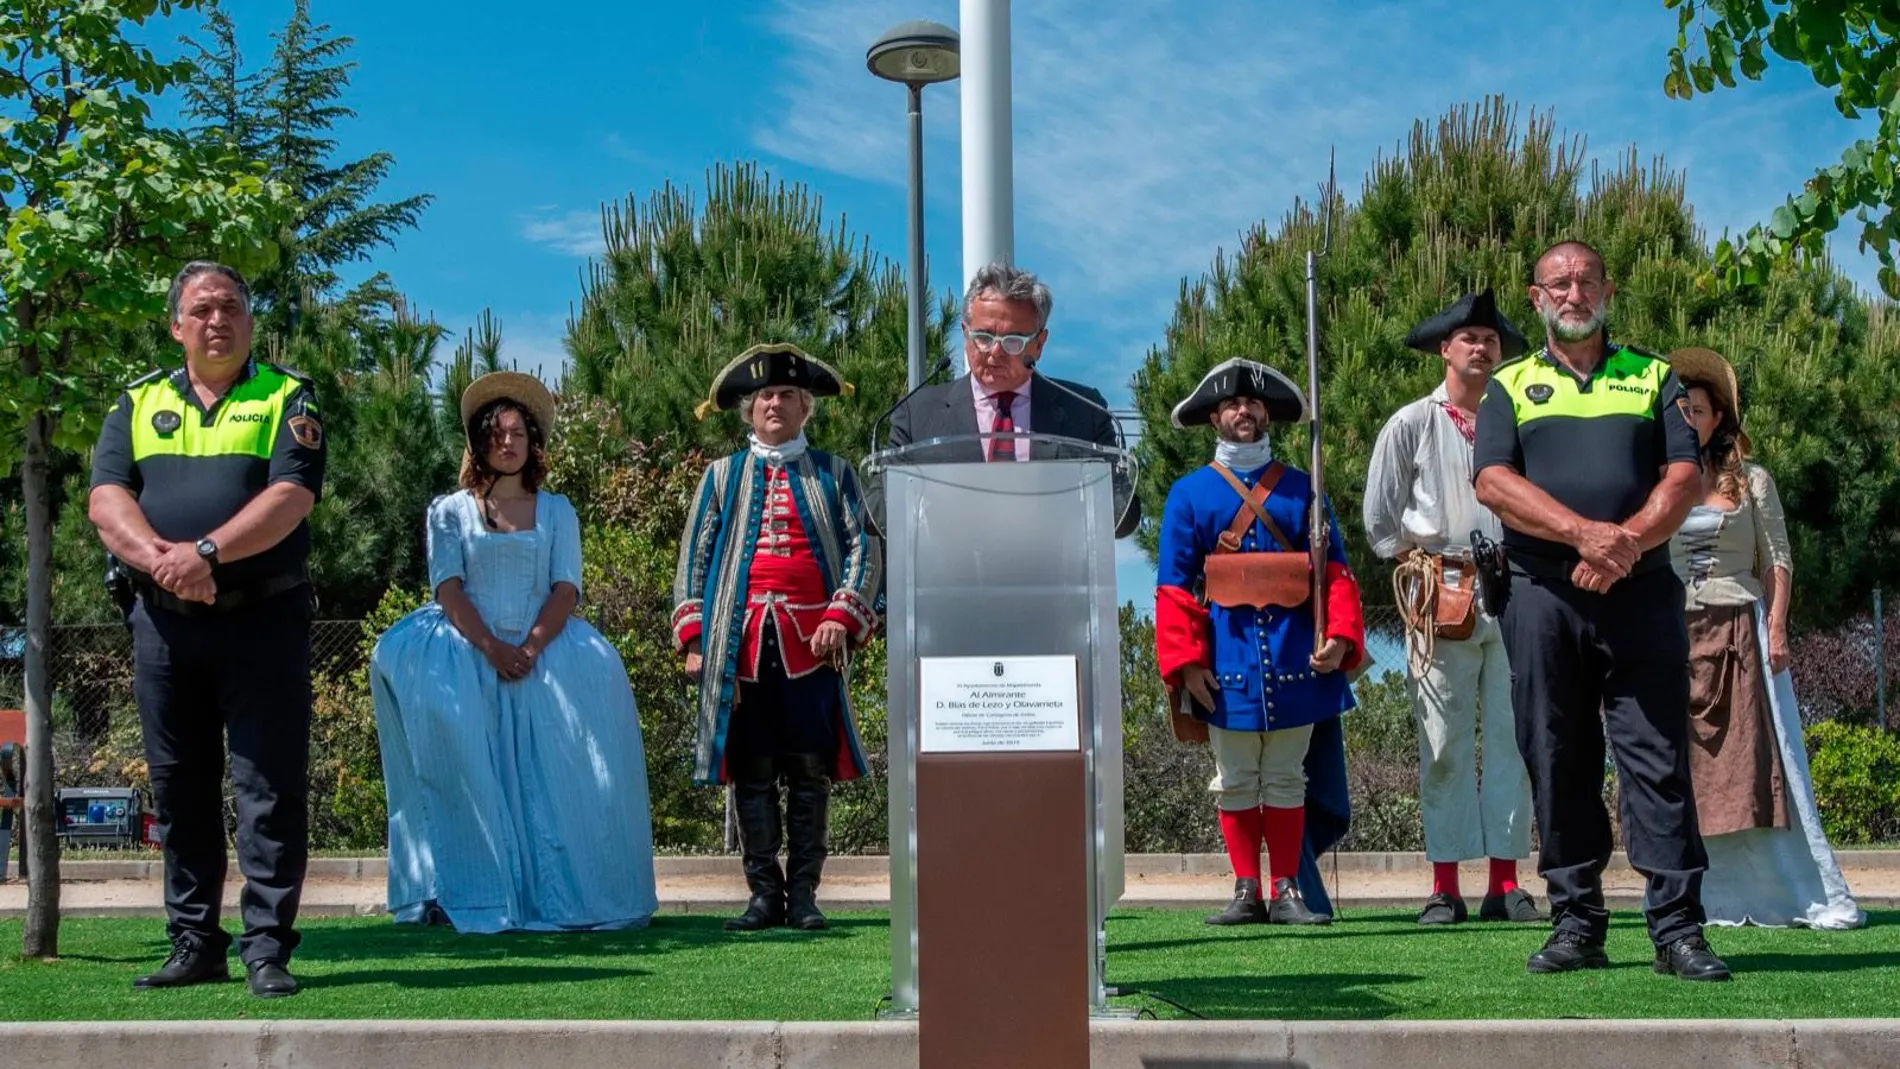 Narciso de Foxá inaugurando el parque Almirante Blas de Lezo y Olavarrieta, junto al presidente de la Fundación Blas de Lezo, Miguel Ángel Gimeno